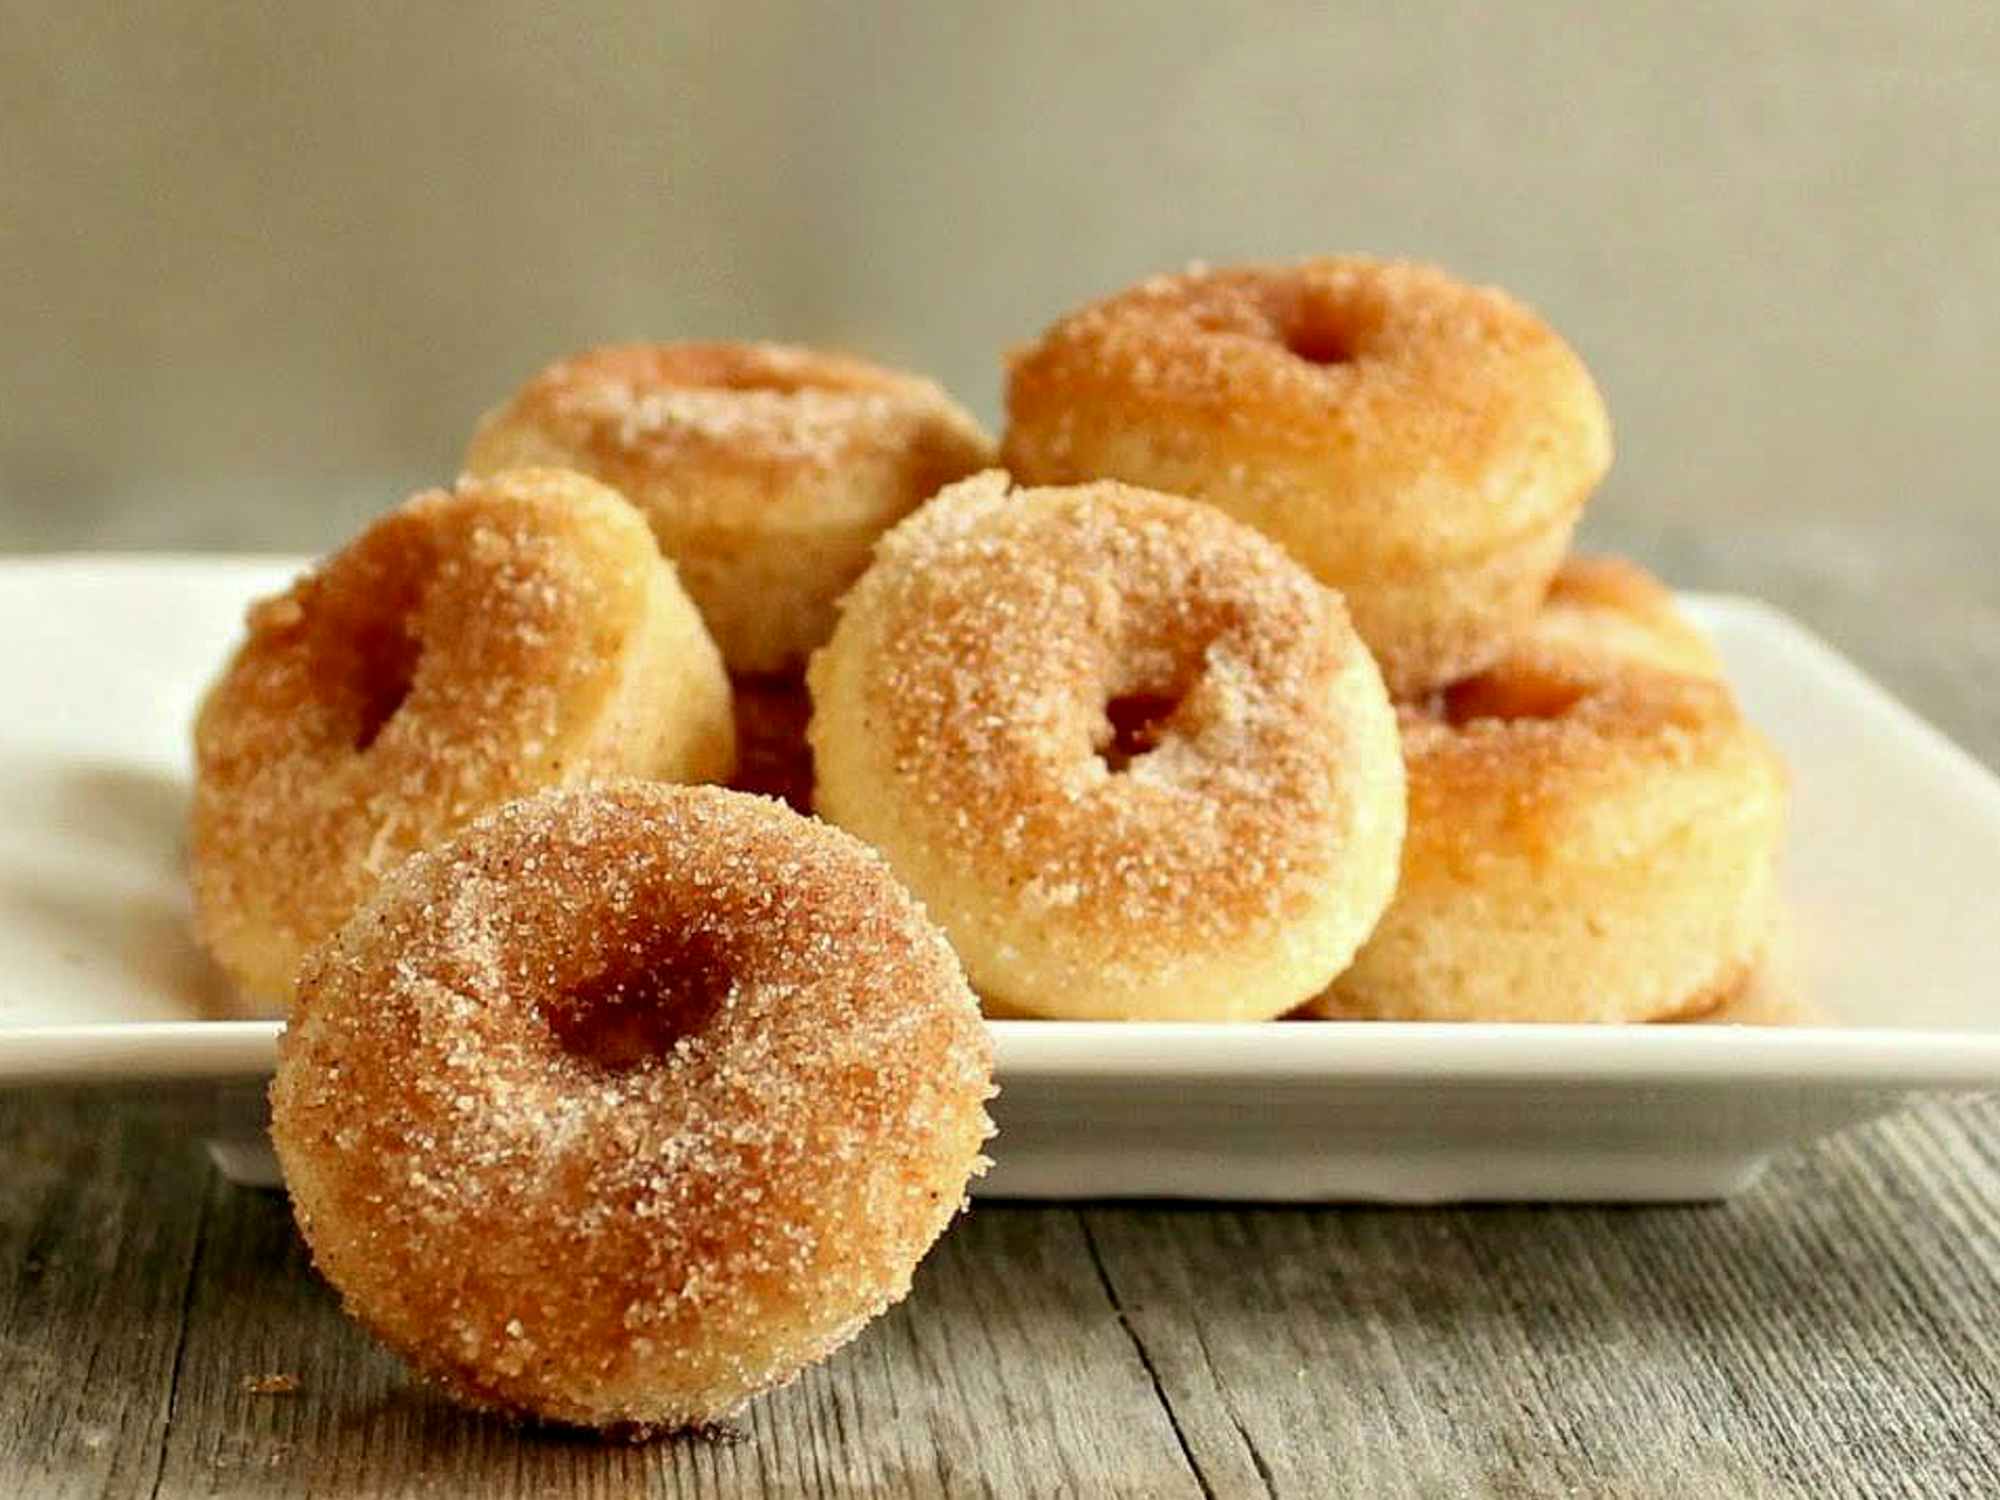 A plate of doughnuts from The Dapper Doughnut